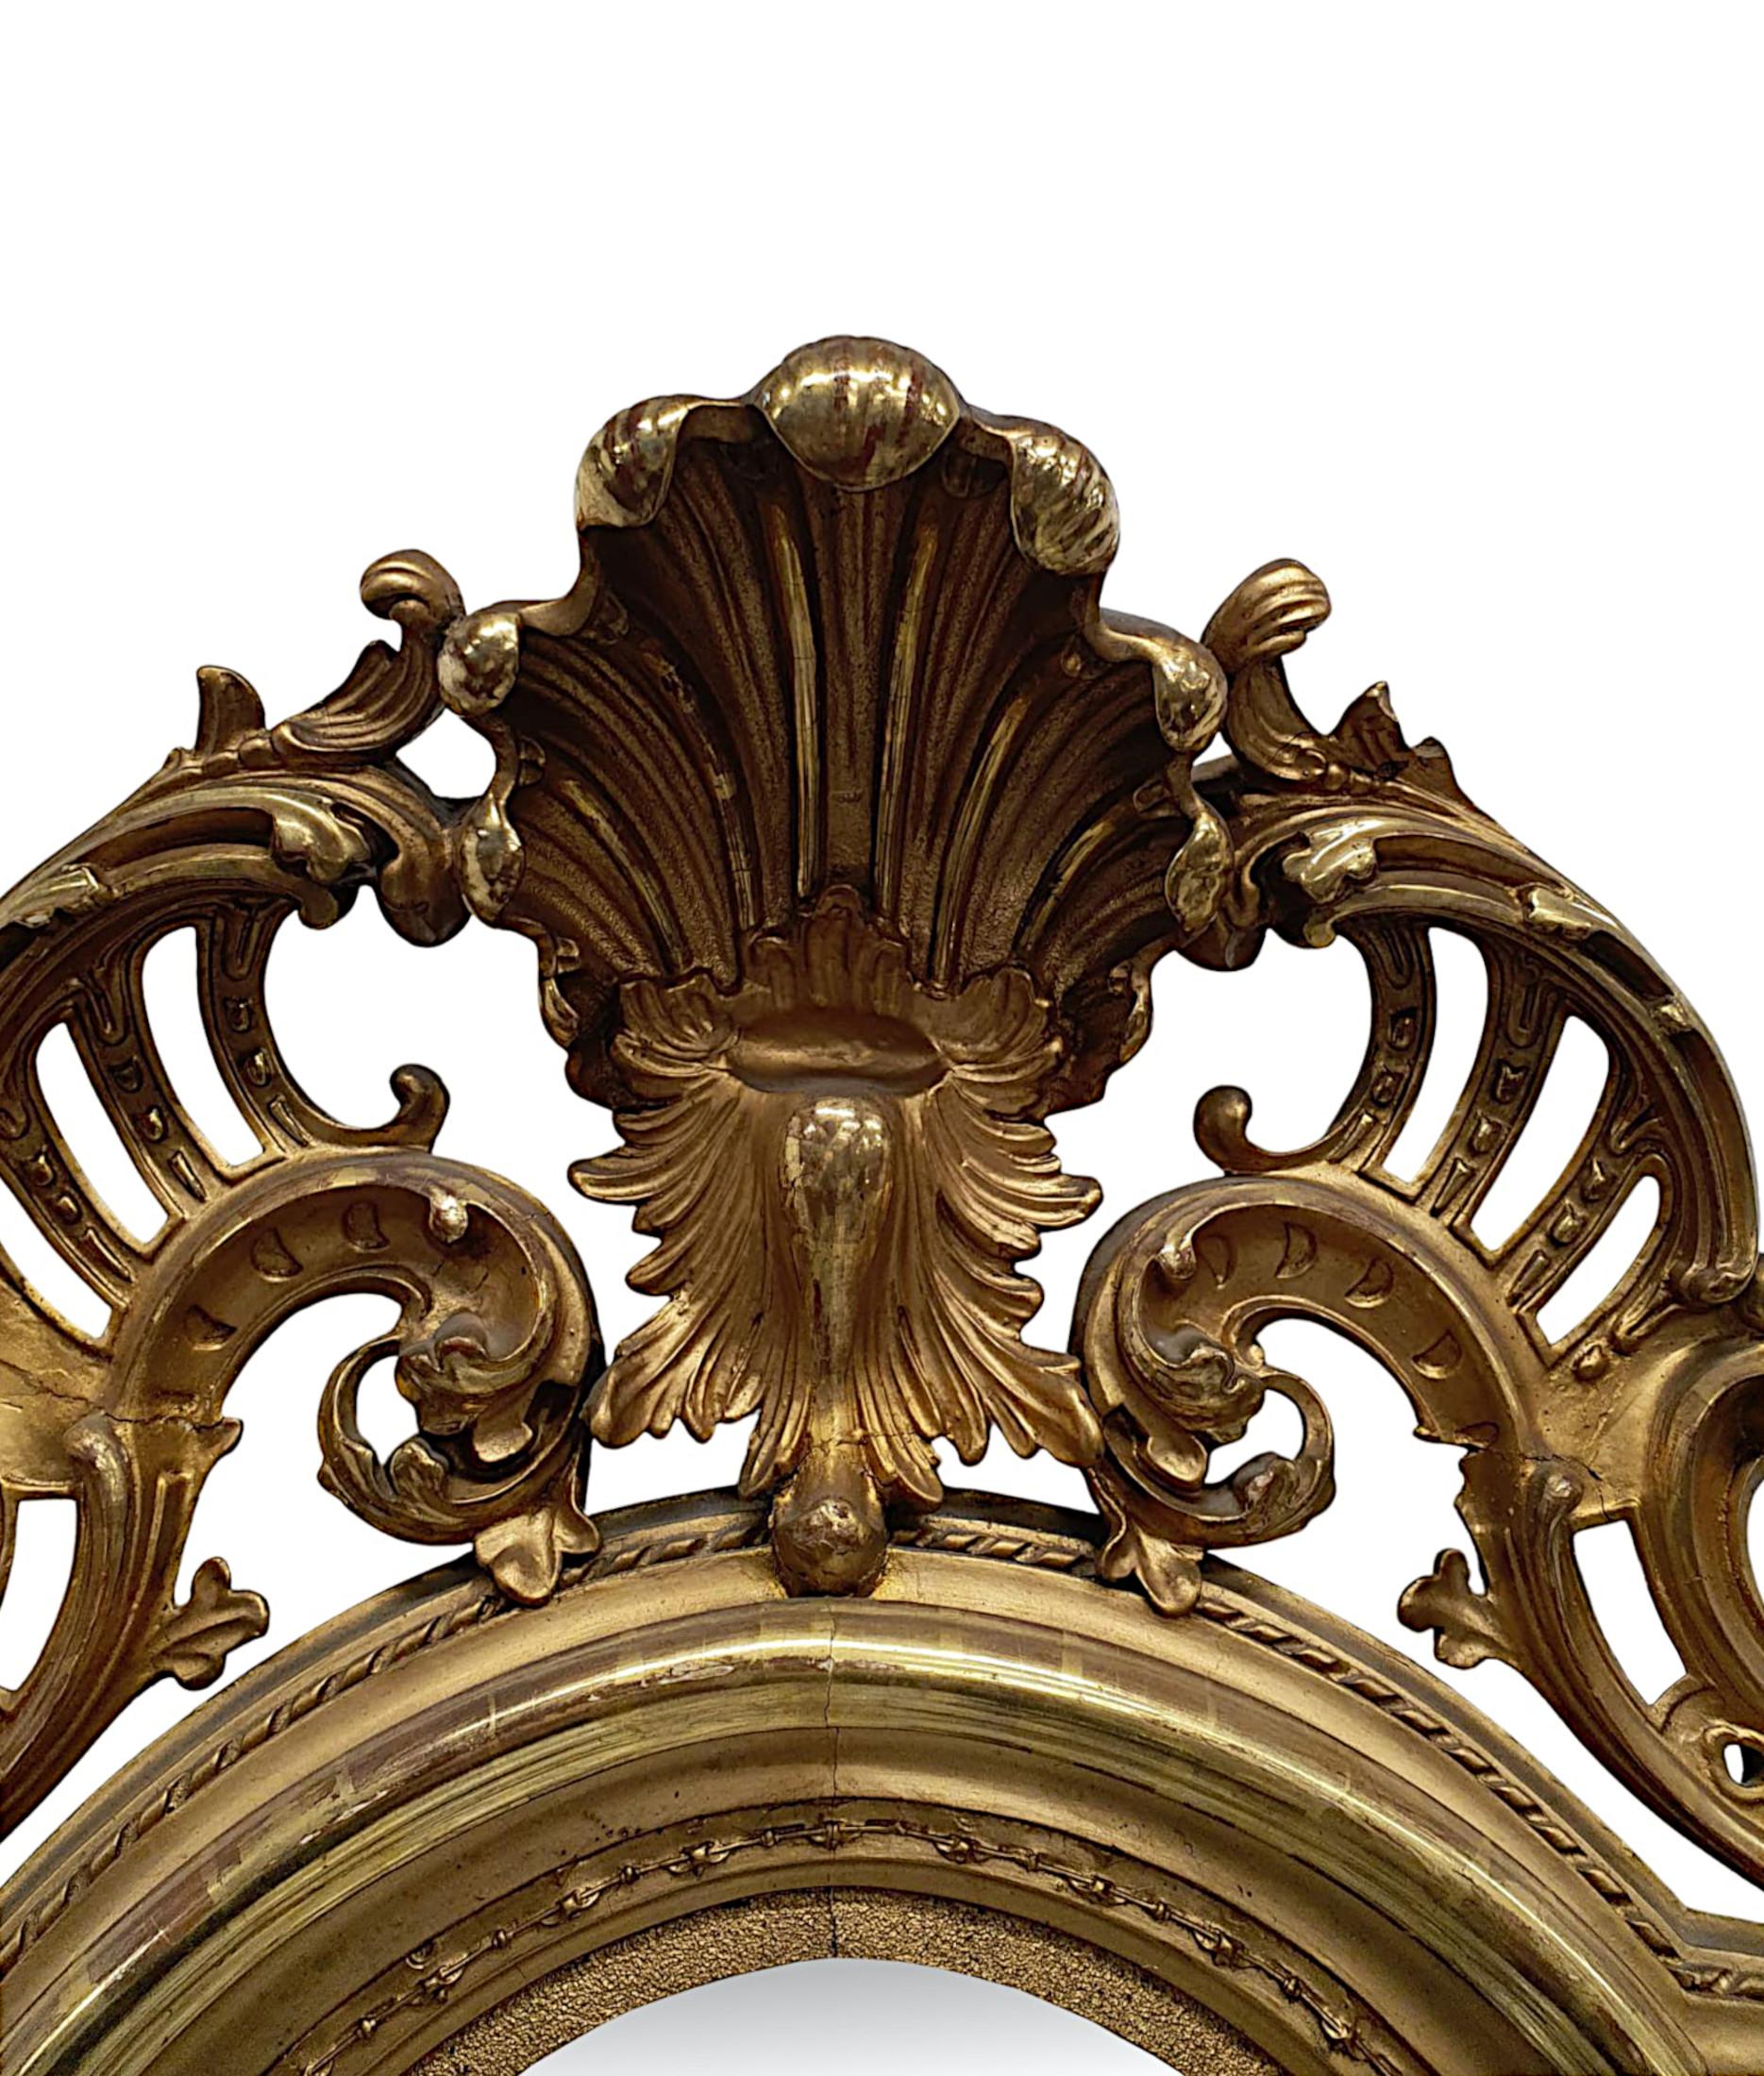 Un fabuleux miroir d'entrée, d'embarcadère ou de coiffeuse en bois doré du XIXe siècle, de grandes proportions et d'une qualité exceptionnelle.  La plaque de verre en forme de miroir est placée dans un cadre en bois doré finement sculpté à la main,